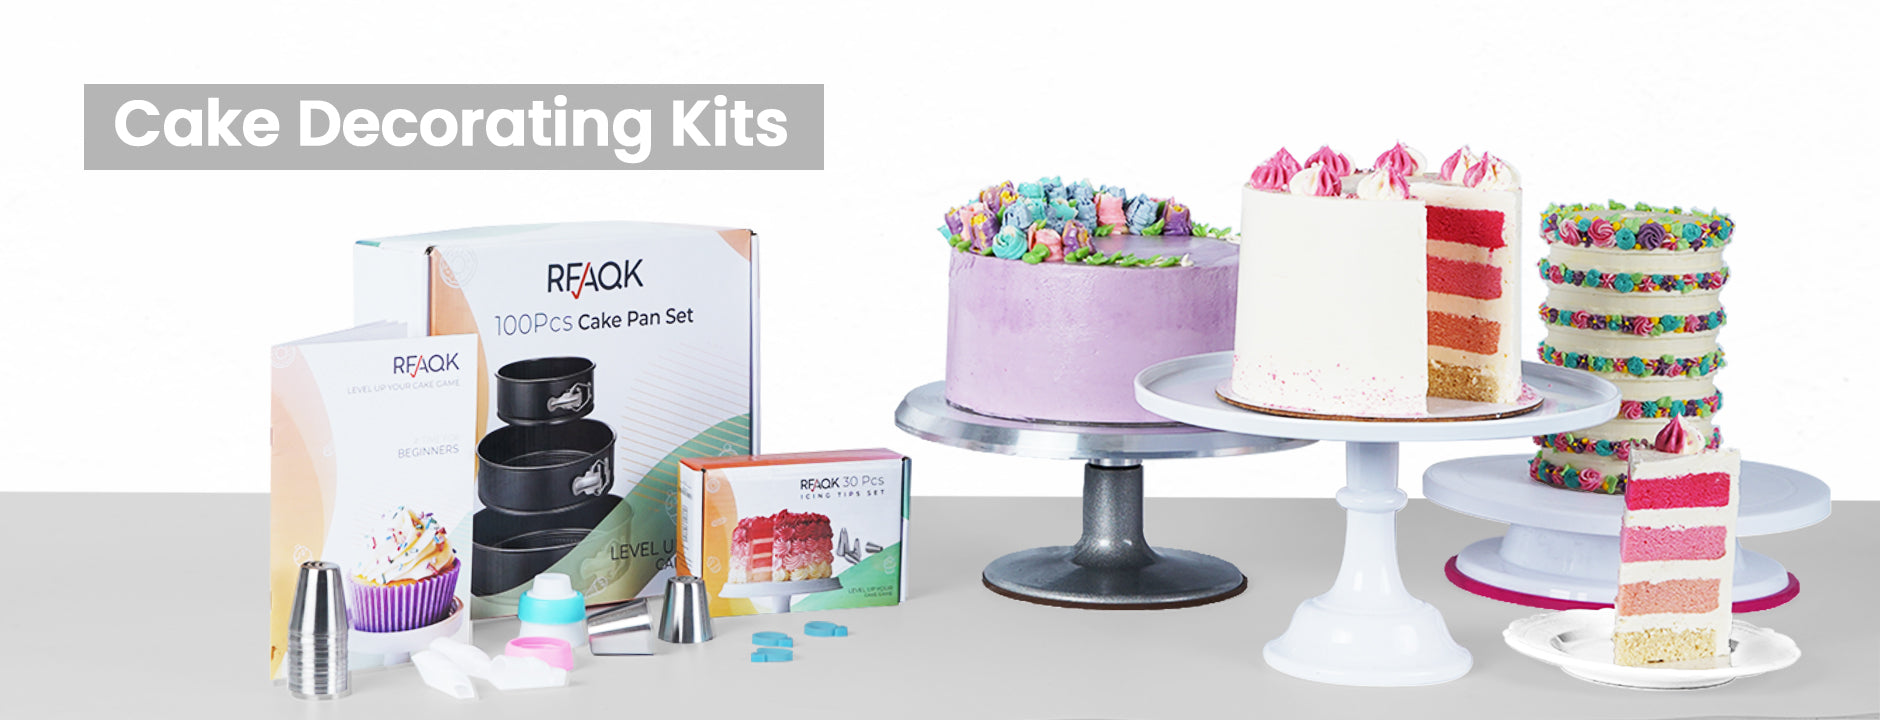  RFAQK Cake Decorating Kit 